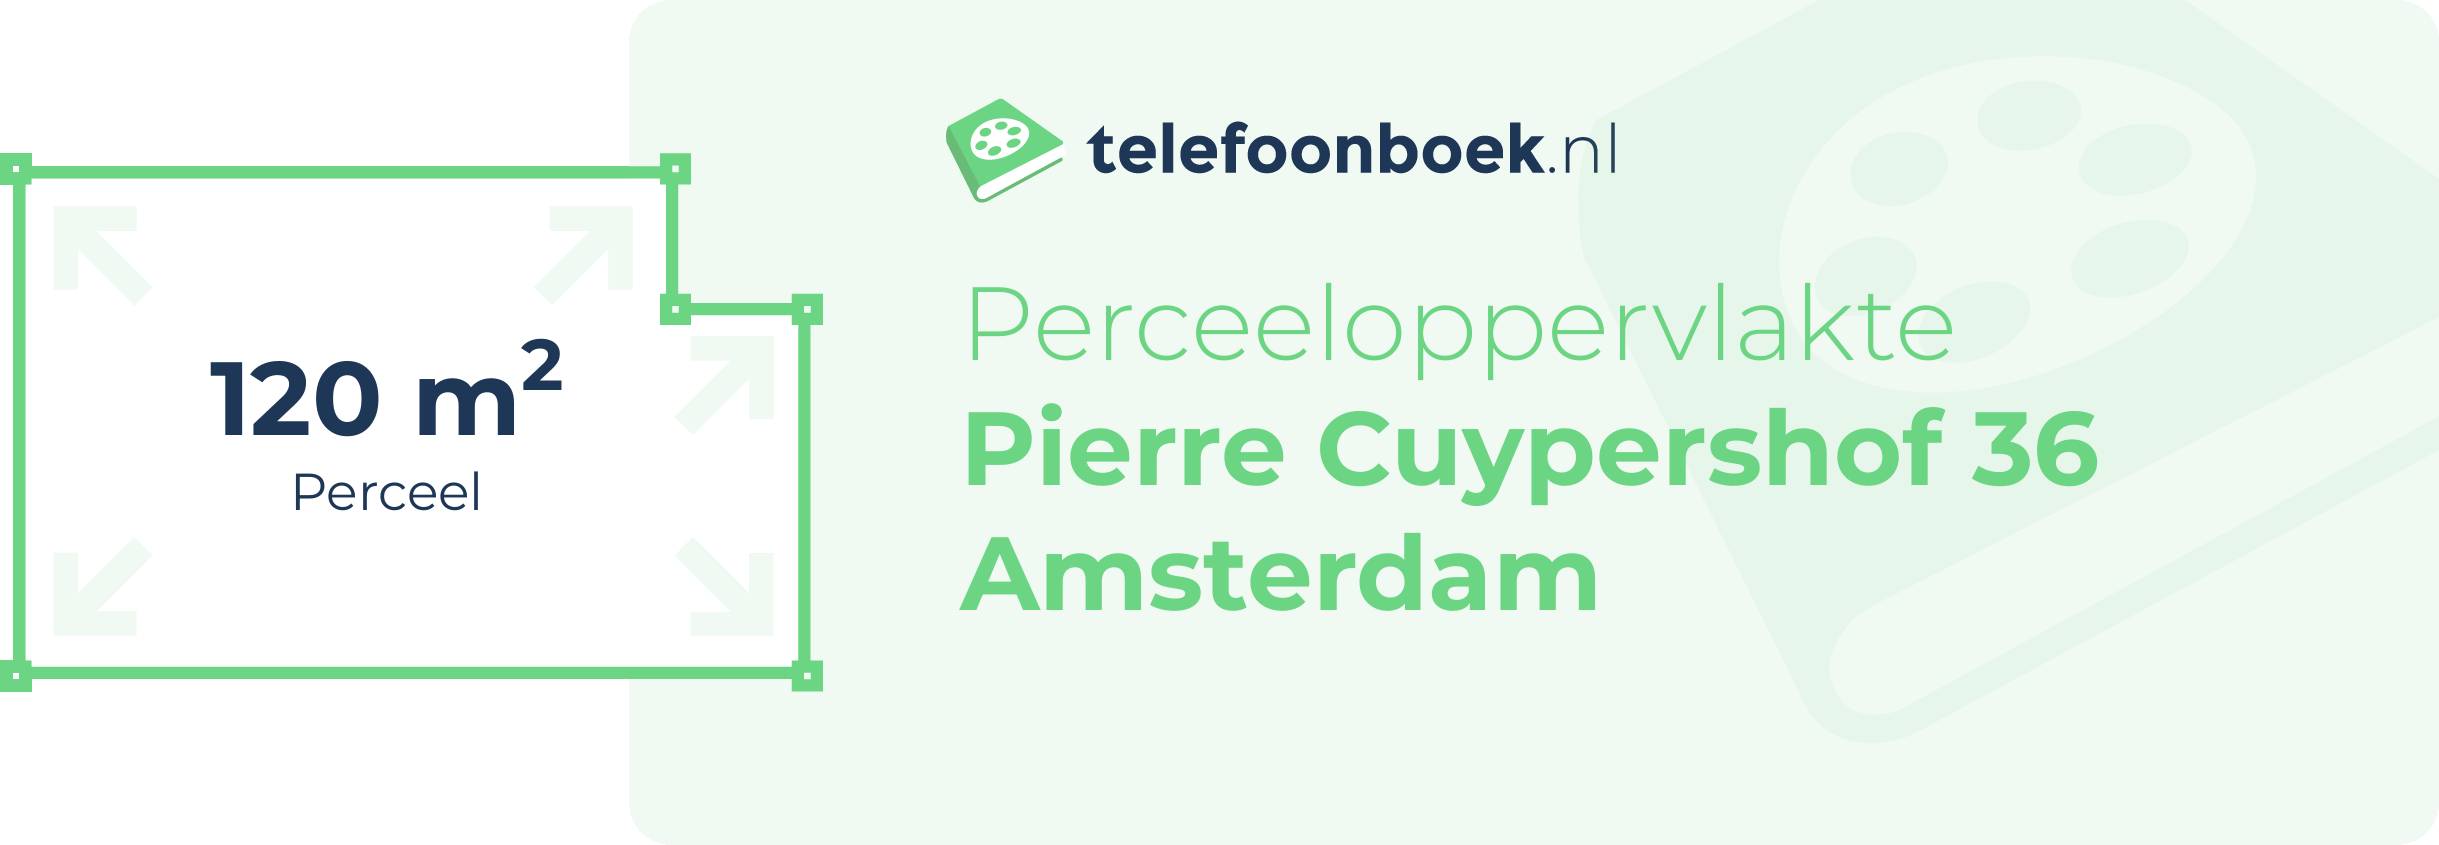 Perceeloppervlakte Pierre Cuypershof 36 Amsterdam